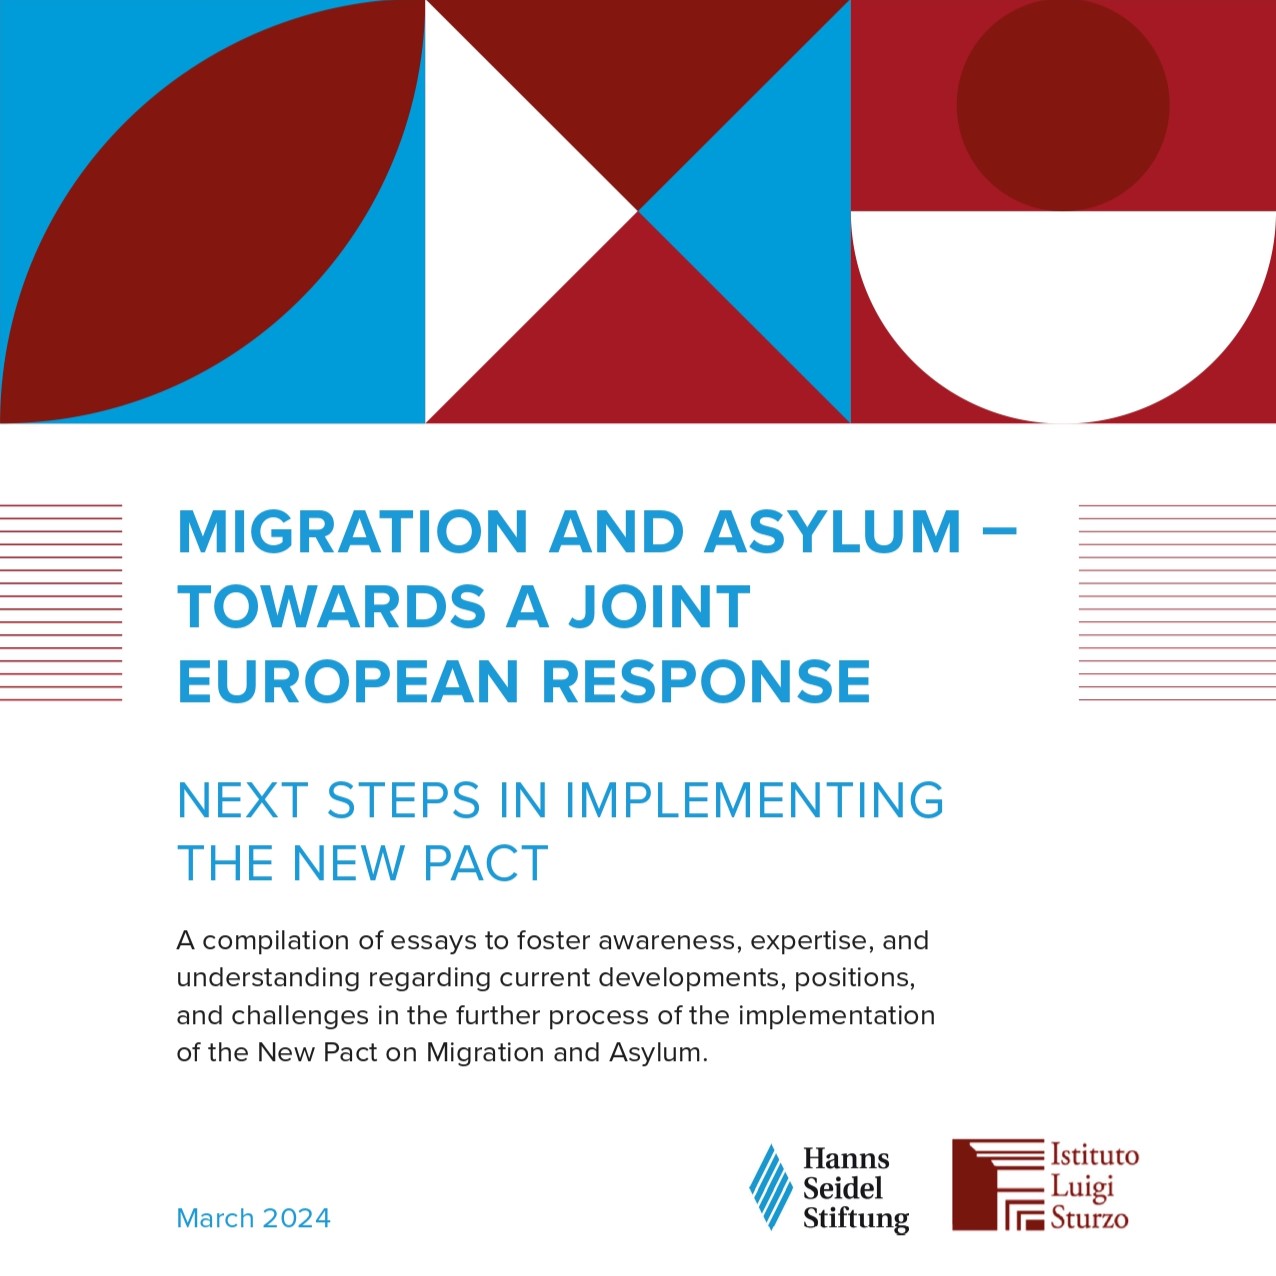 Patto europeo sulla migrazione e l’asilo, la nuova pubblicazione dell’Istituto e della Fondazione Hanns Seidel di Bruxelles